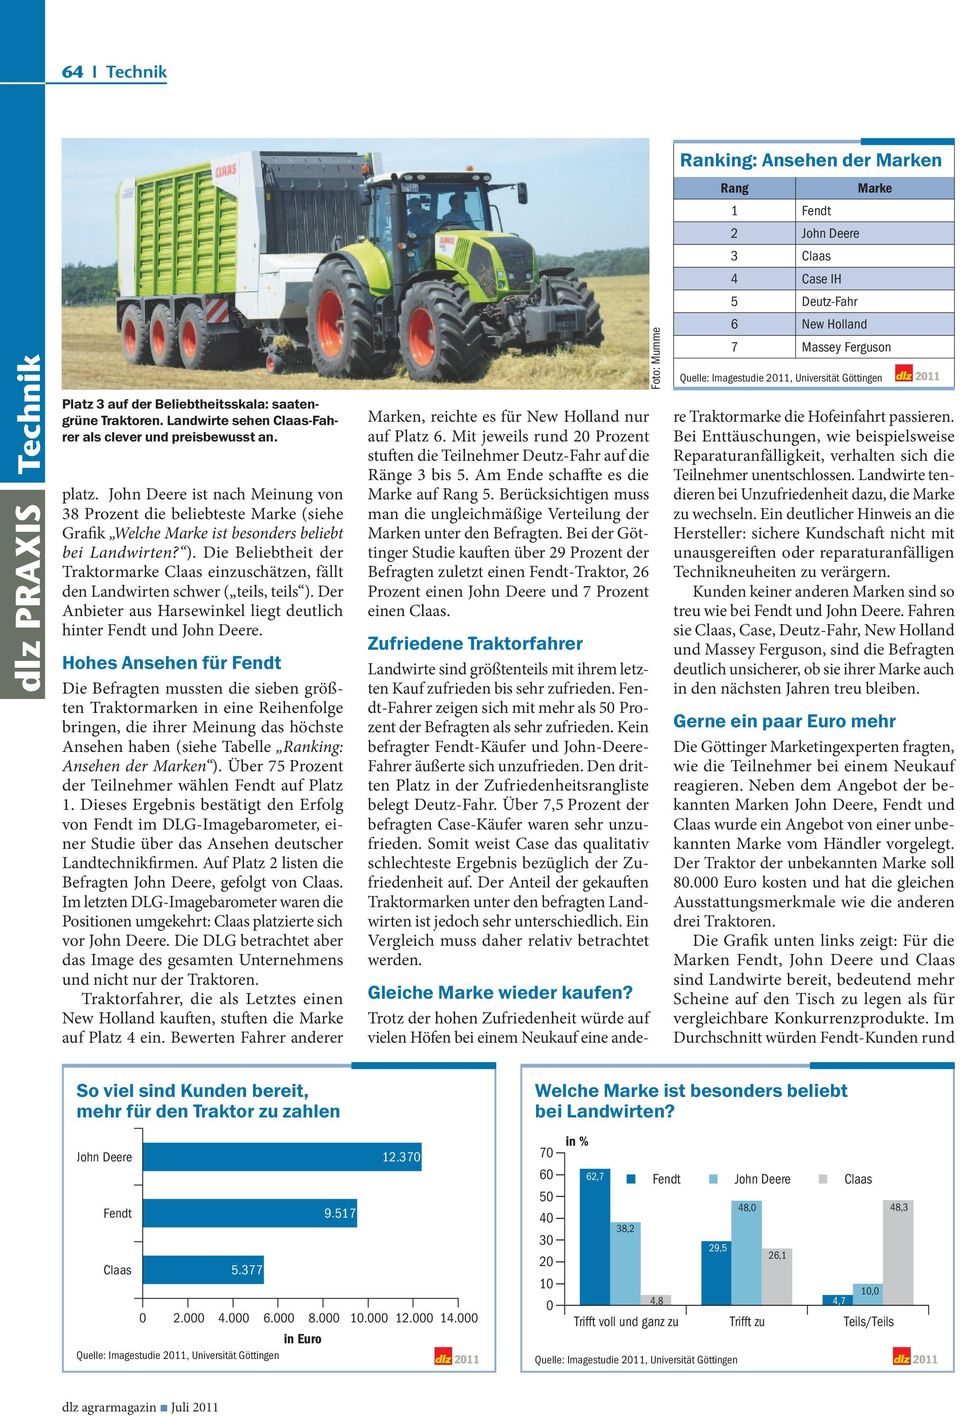 Die Beliebtheit der Traktormarke Claas einzuschätzen, fällt den Landwirten schwer ( teils, teils ). Der Anbieter aus Harsewinkel liegt deutlich hinter Fendt und John Deere.